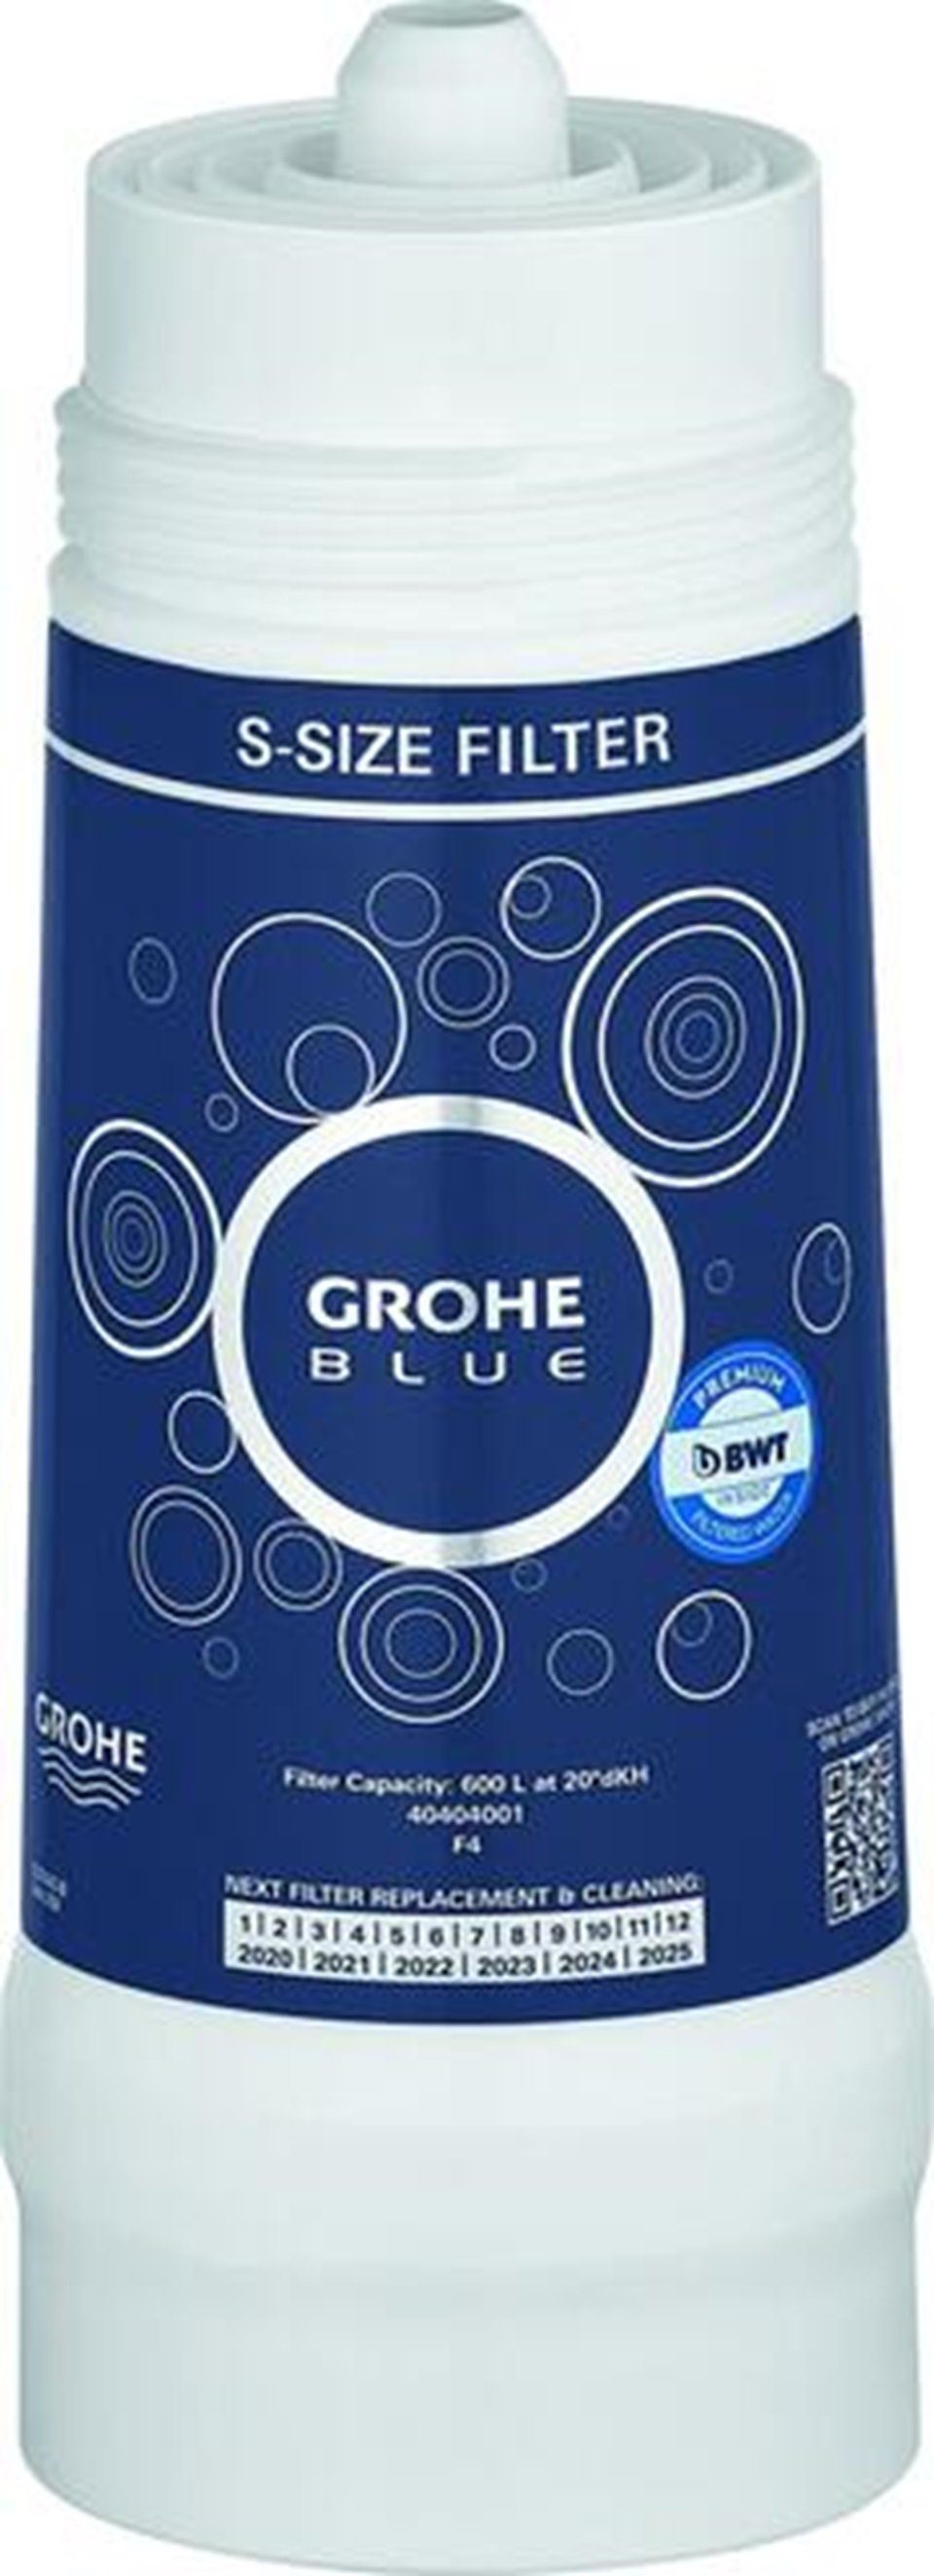 Grohe Wasserfilter GROHE BLUE BWT-Austauschfilter 40404 Kapazität 600 Liter